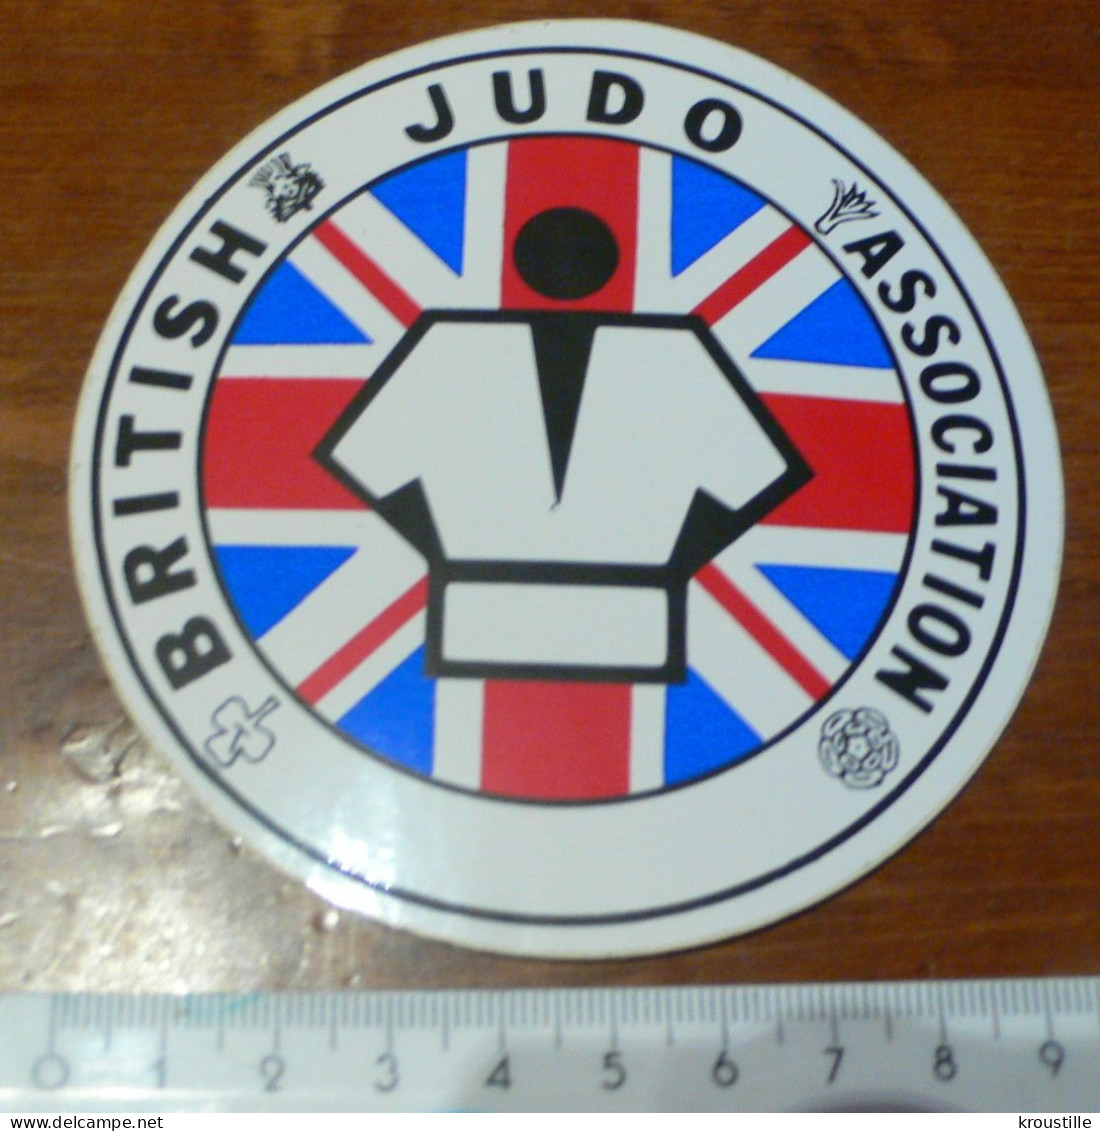 AUTOCOLLANT BRITISH JUDO ASSOCIATION - Adesivi